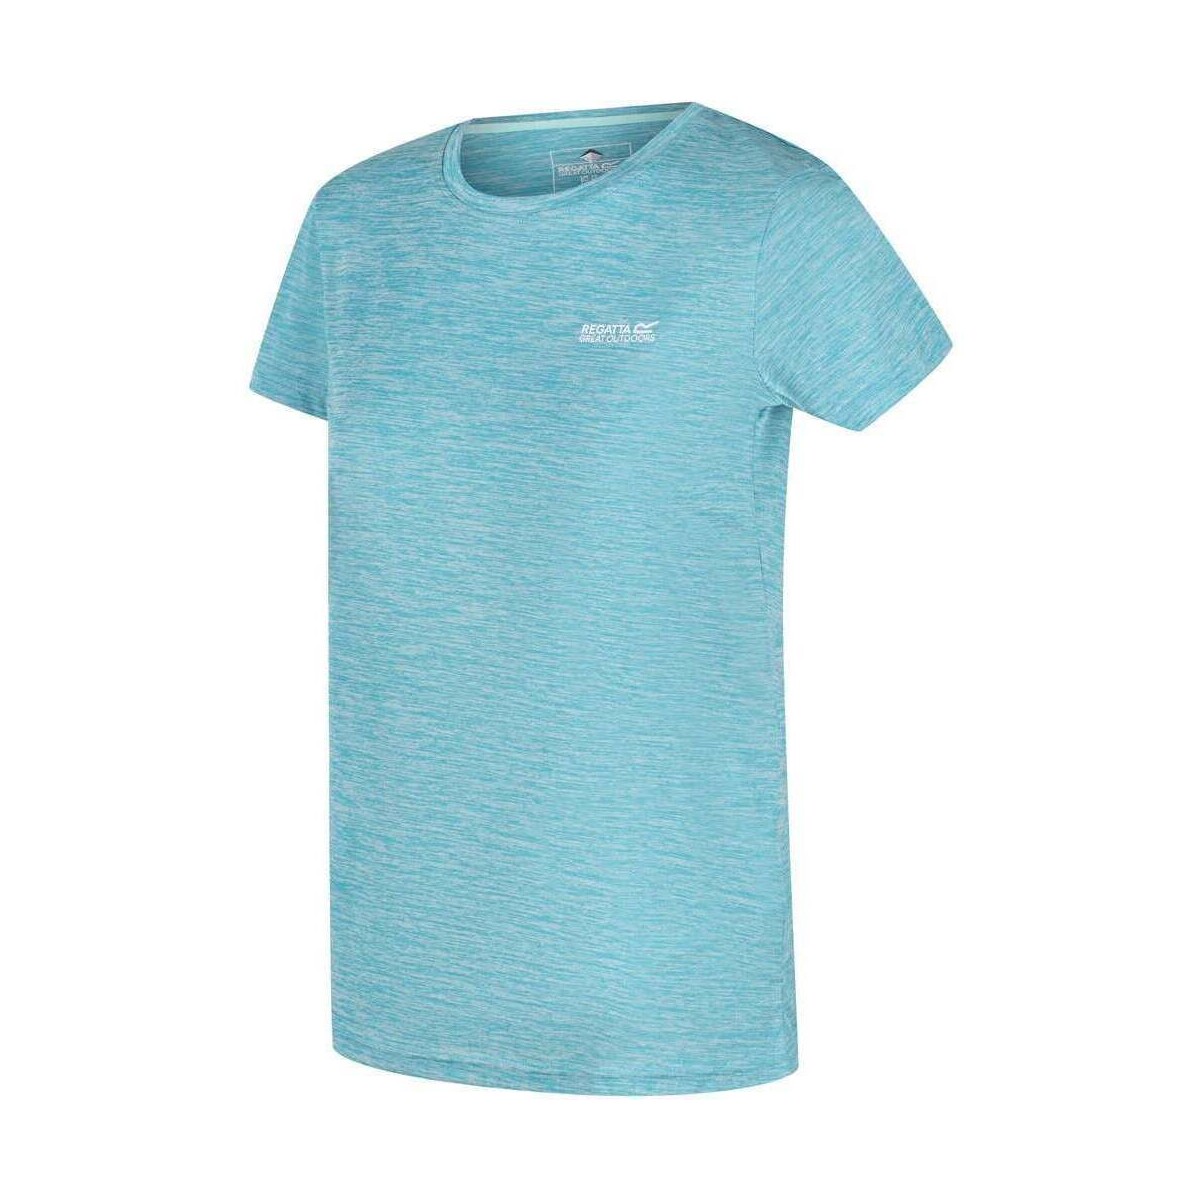 Vêtements Femme T-shirts manches courtes Regatta Wm Fingal Edition Bleu